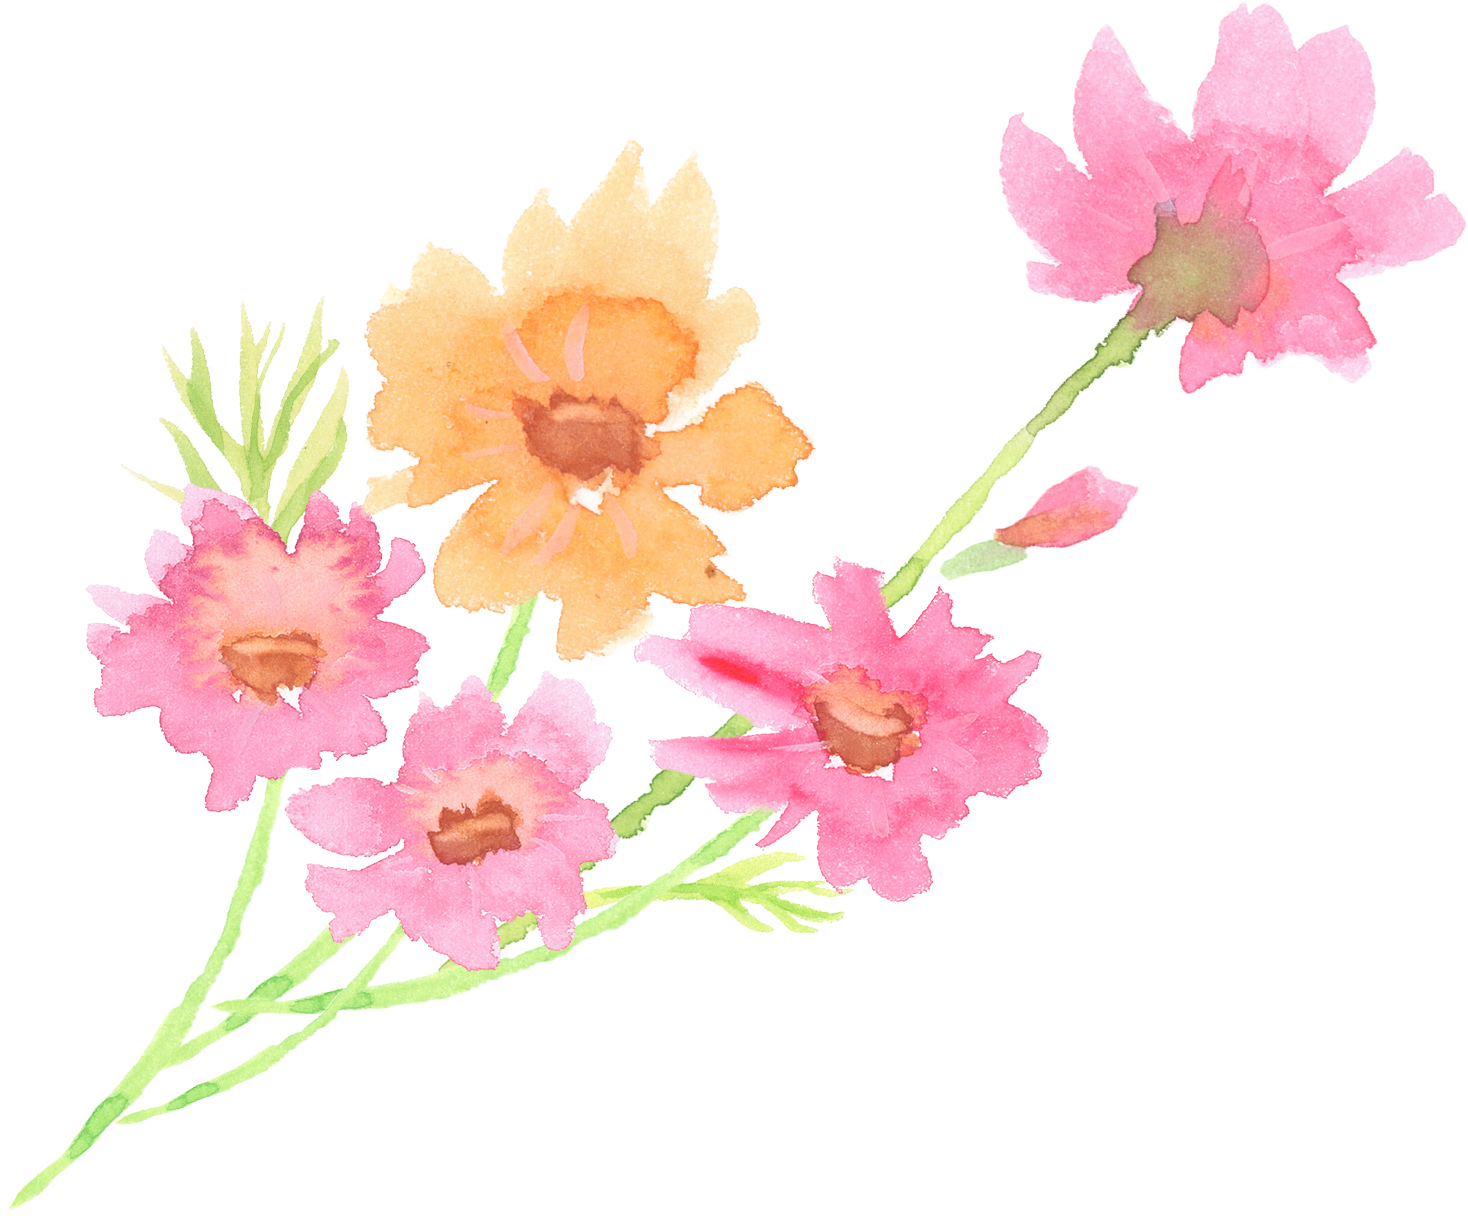 可愛いイラスト無料 水彩 コスモス 花 束 公式 イラストダウンロード